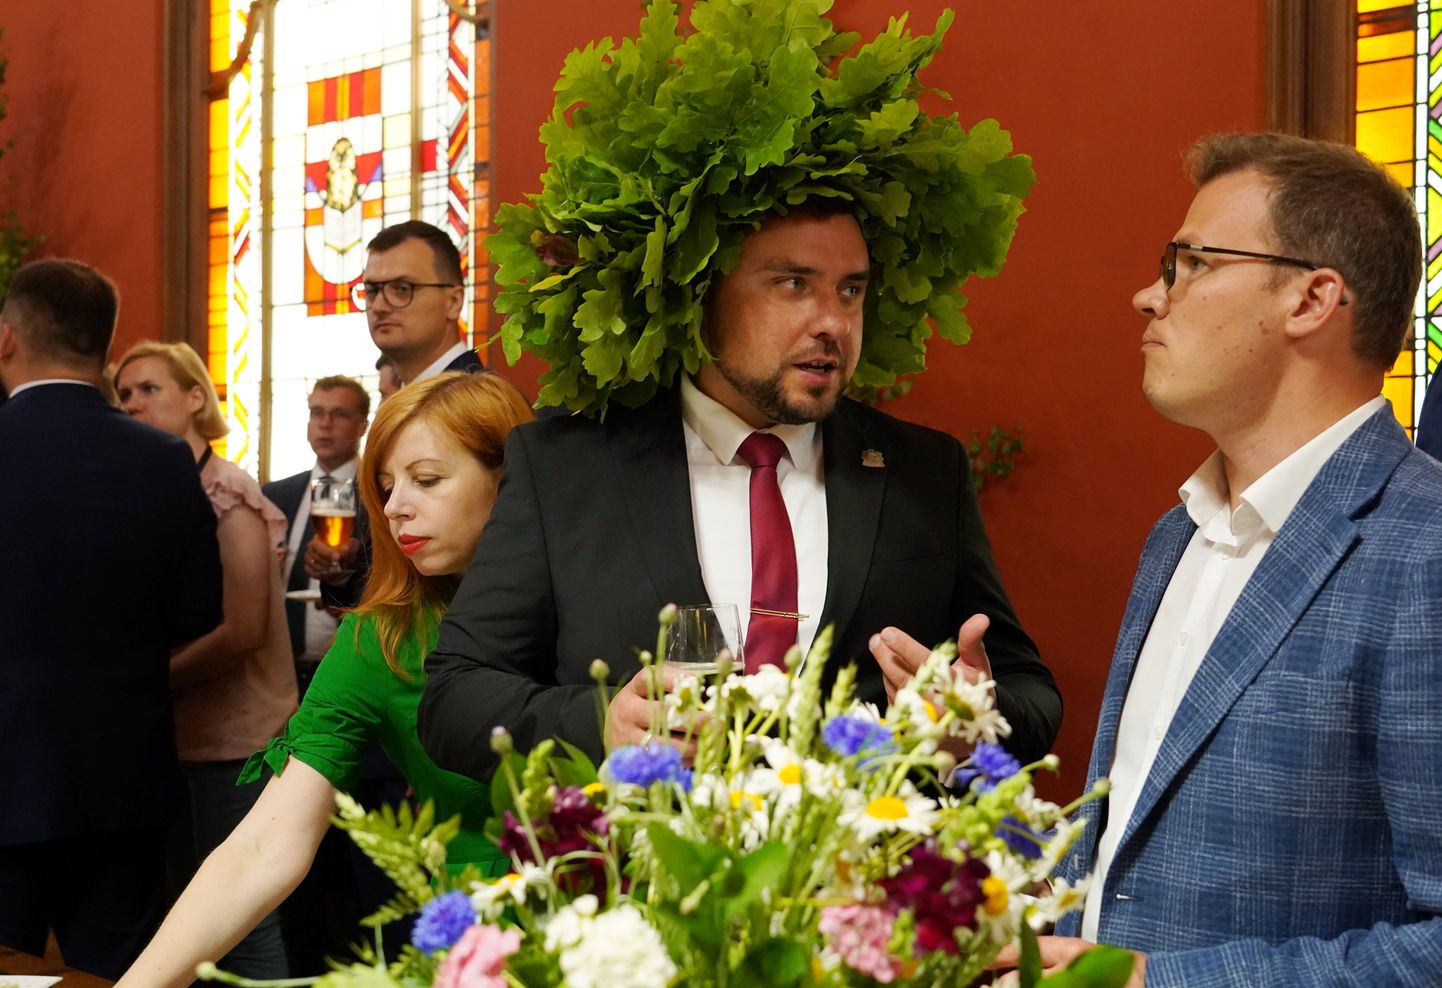 Saeimas priekšsēdētāja biedrs Jānis Grasbergs (no kreisās) un Saeimas deputāts Raivis Dzintars piedalās Jāņu ielīgošanas pasākumā Saeimā.